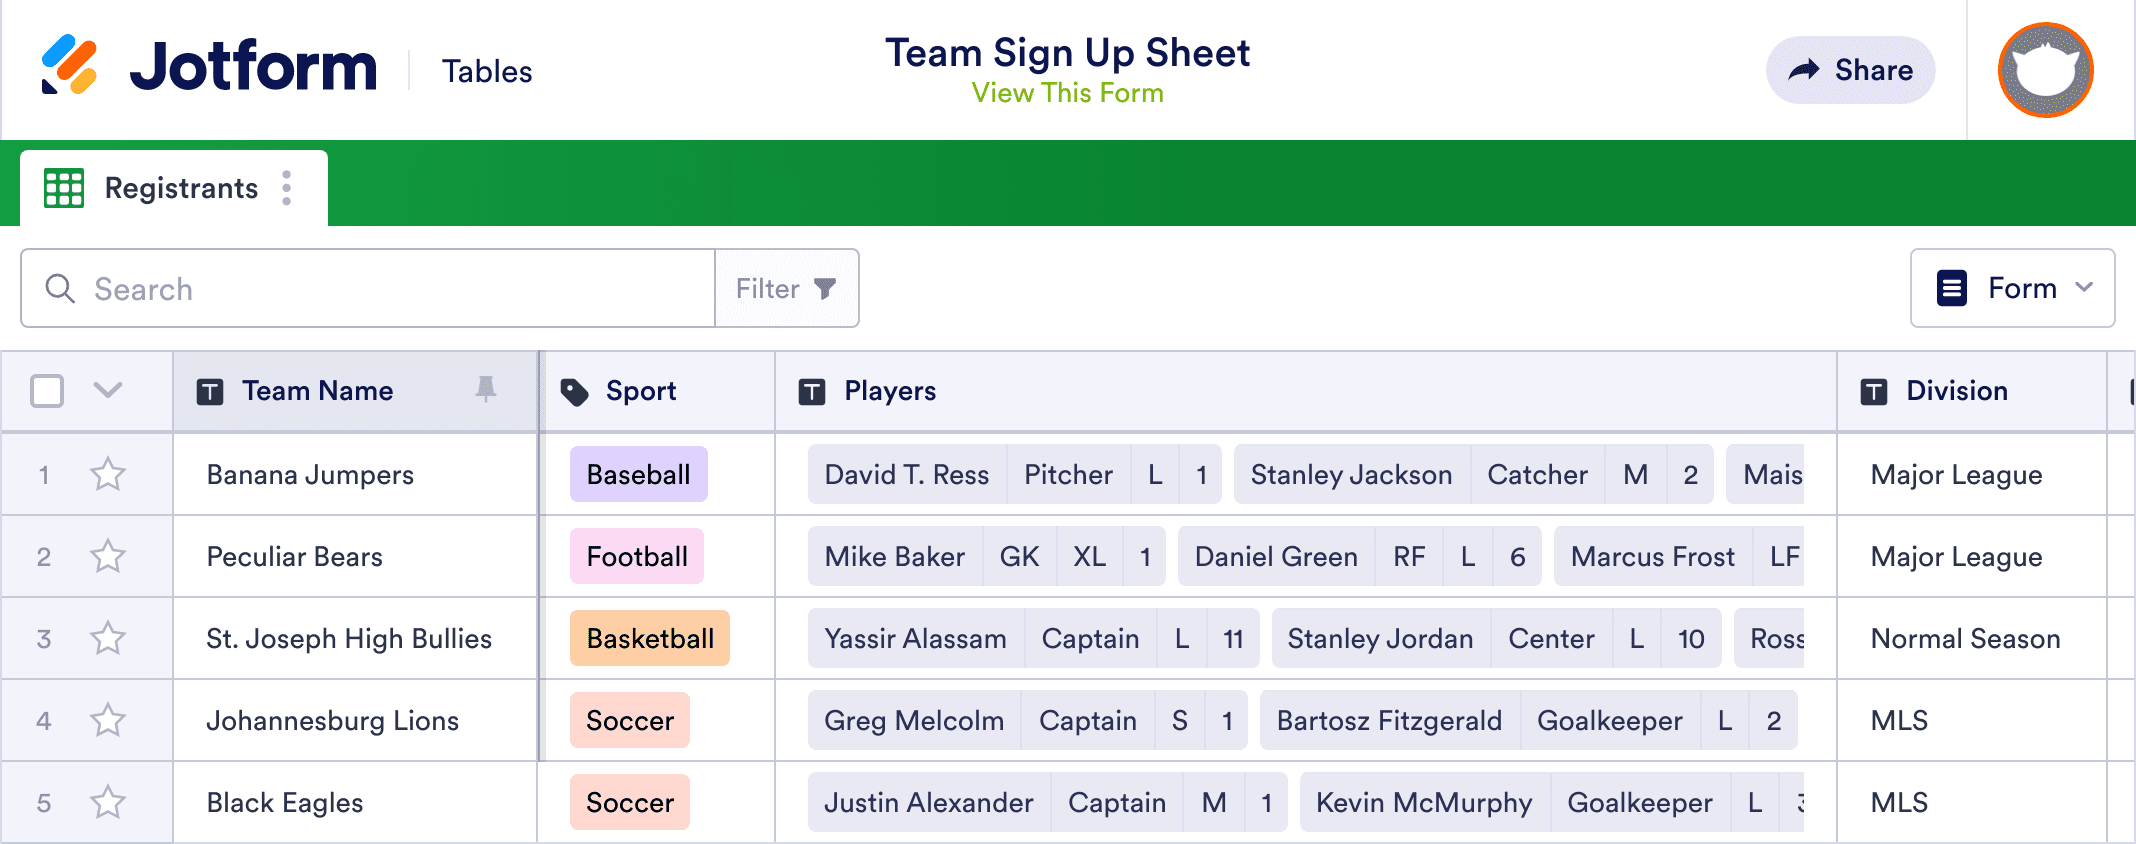 Team Sign Up Sheet